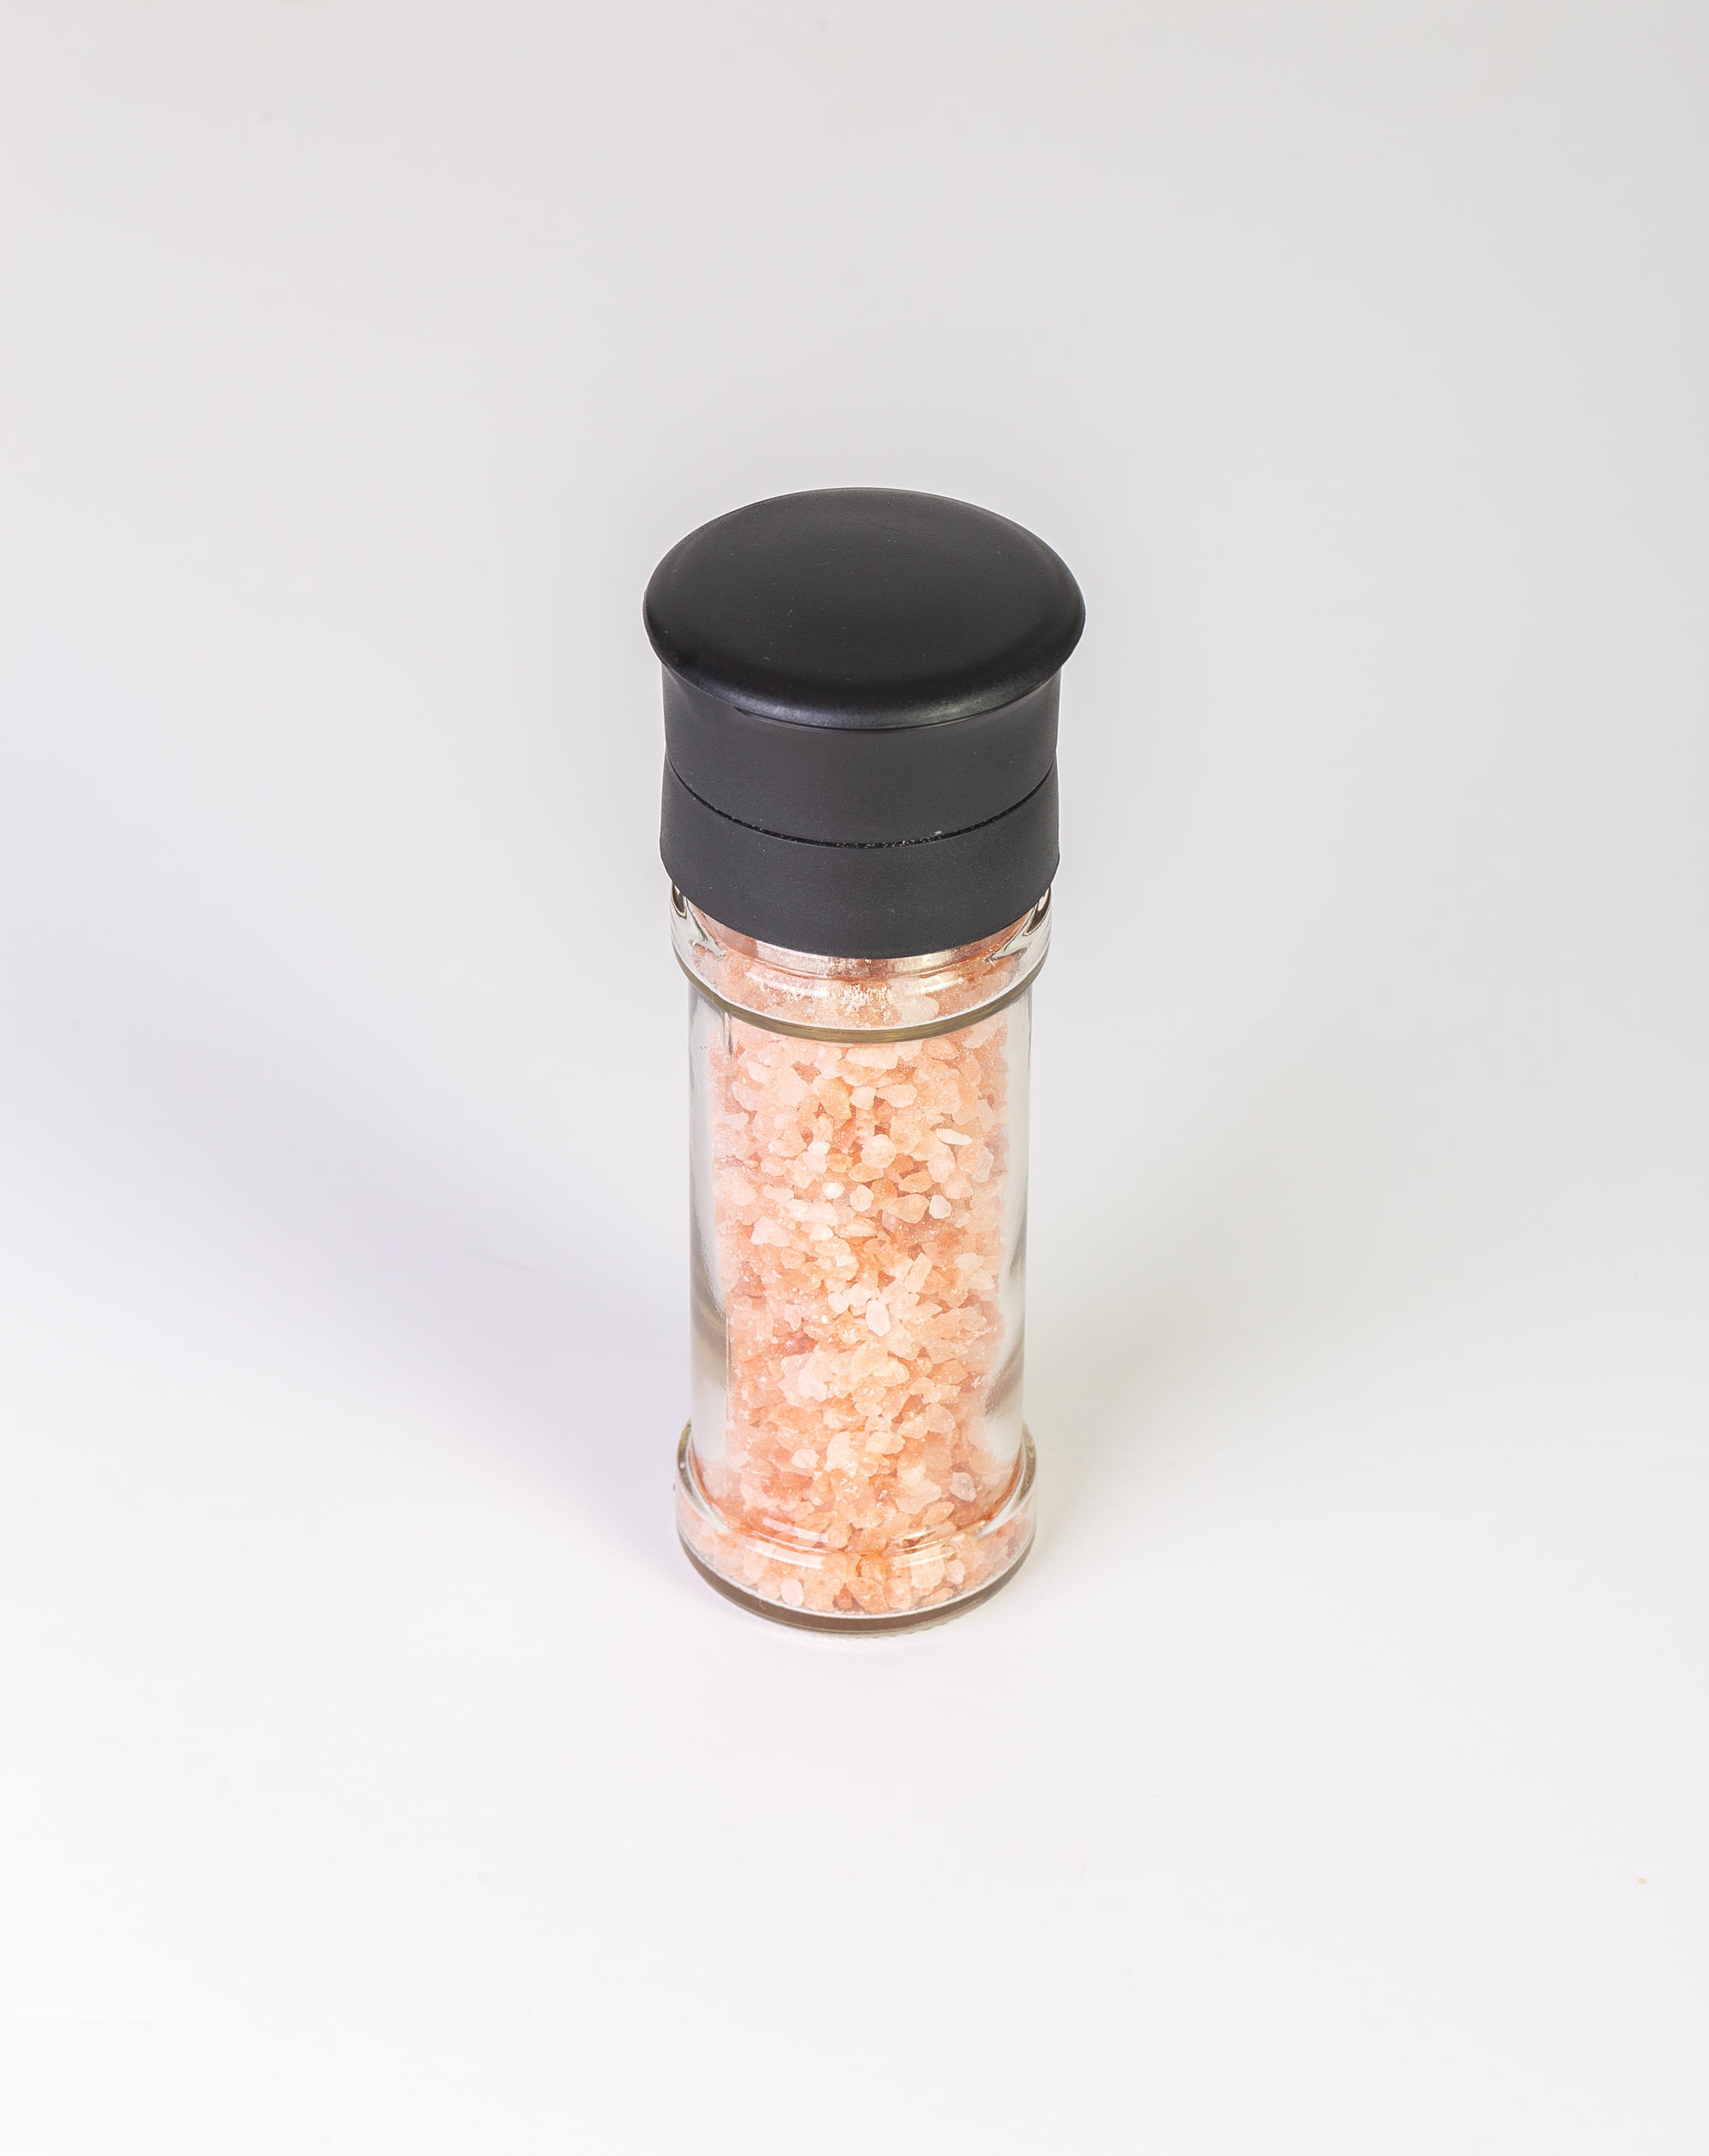 Himalayan Pink Salt in a salt grinder.